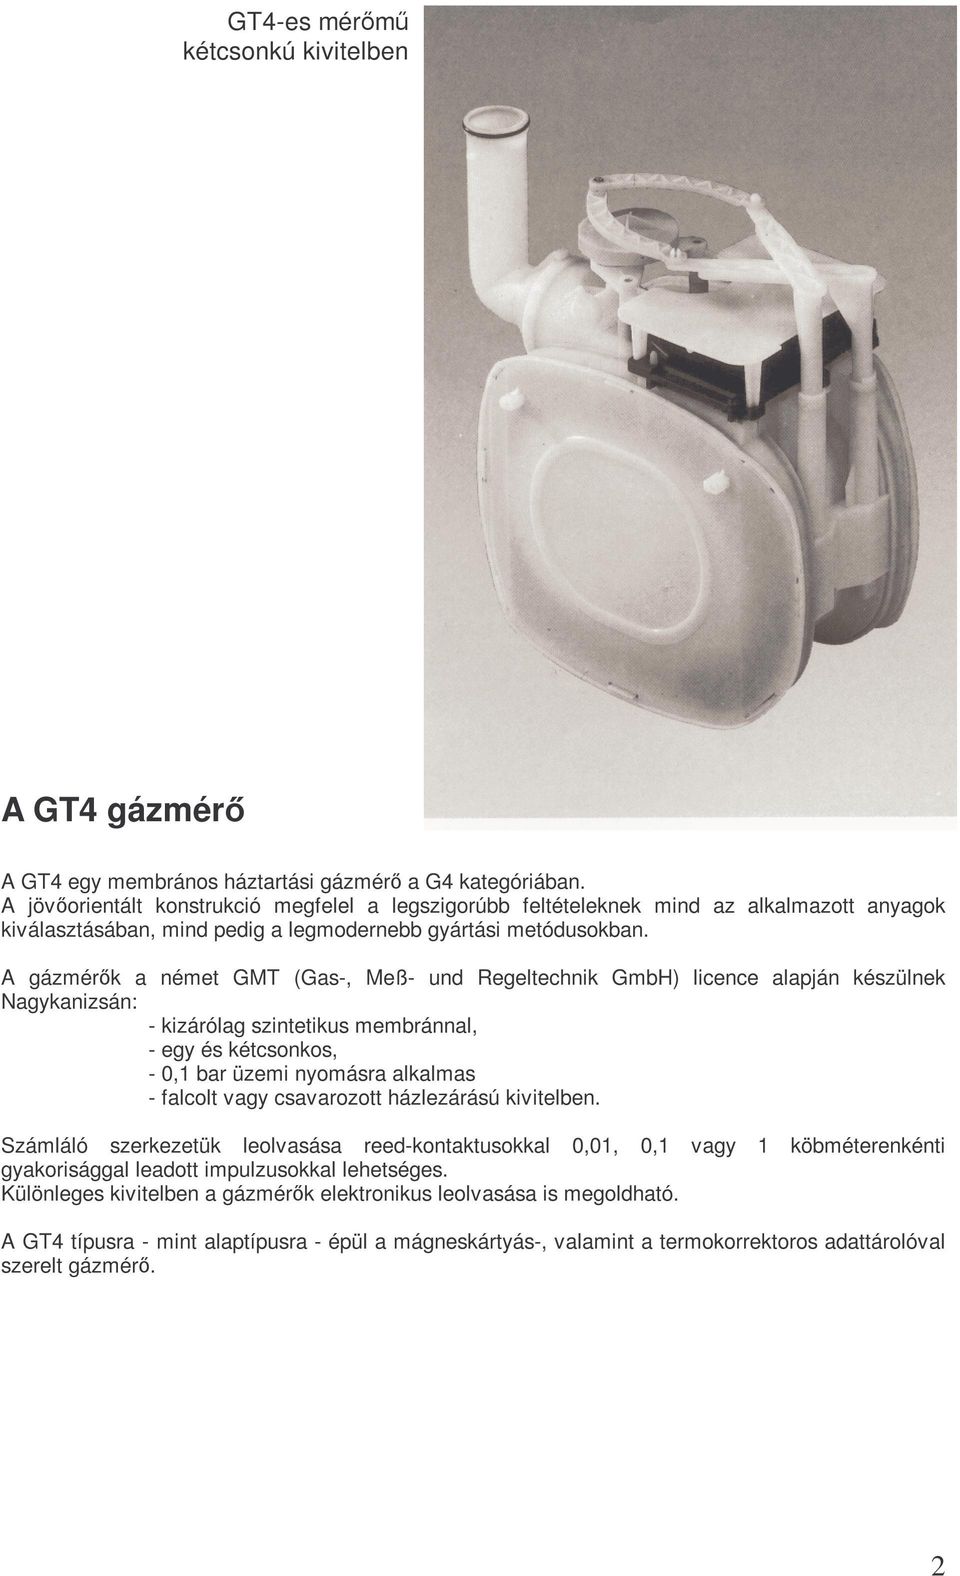 A gázmérık a német GMT (Gas-, Meß- und Regeltechnik GmbH) licence alapján készülnek Nagykanizsán: - kizárólag szintetikus membránnal, - egy és kétcsonkos, - 0,1 bar üzemi nyomásra alkalmas - falcolt